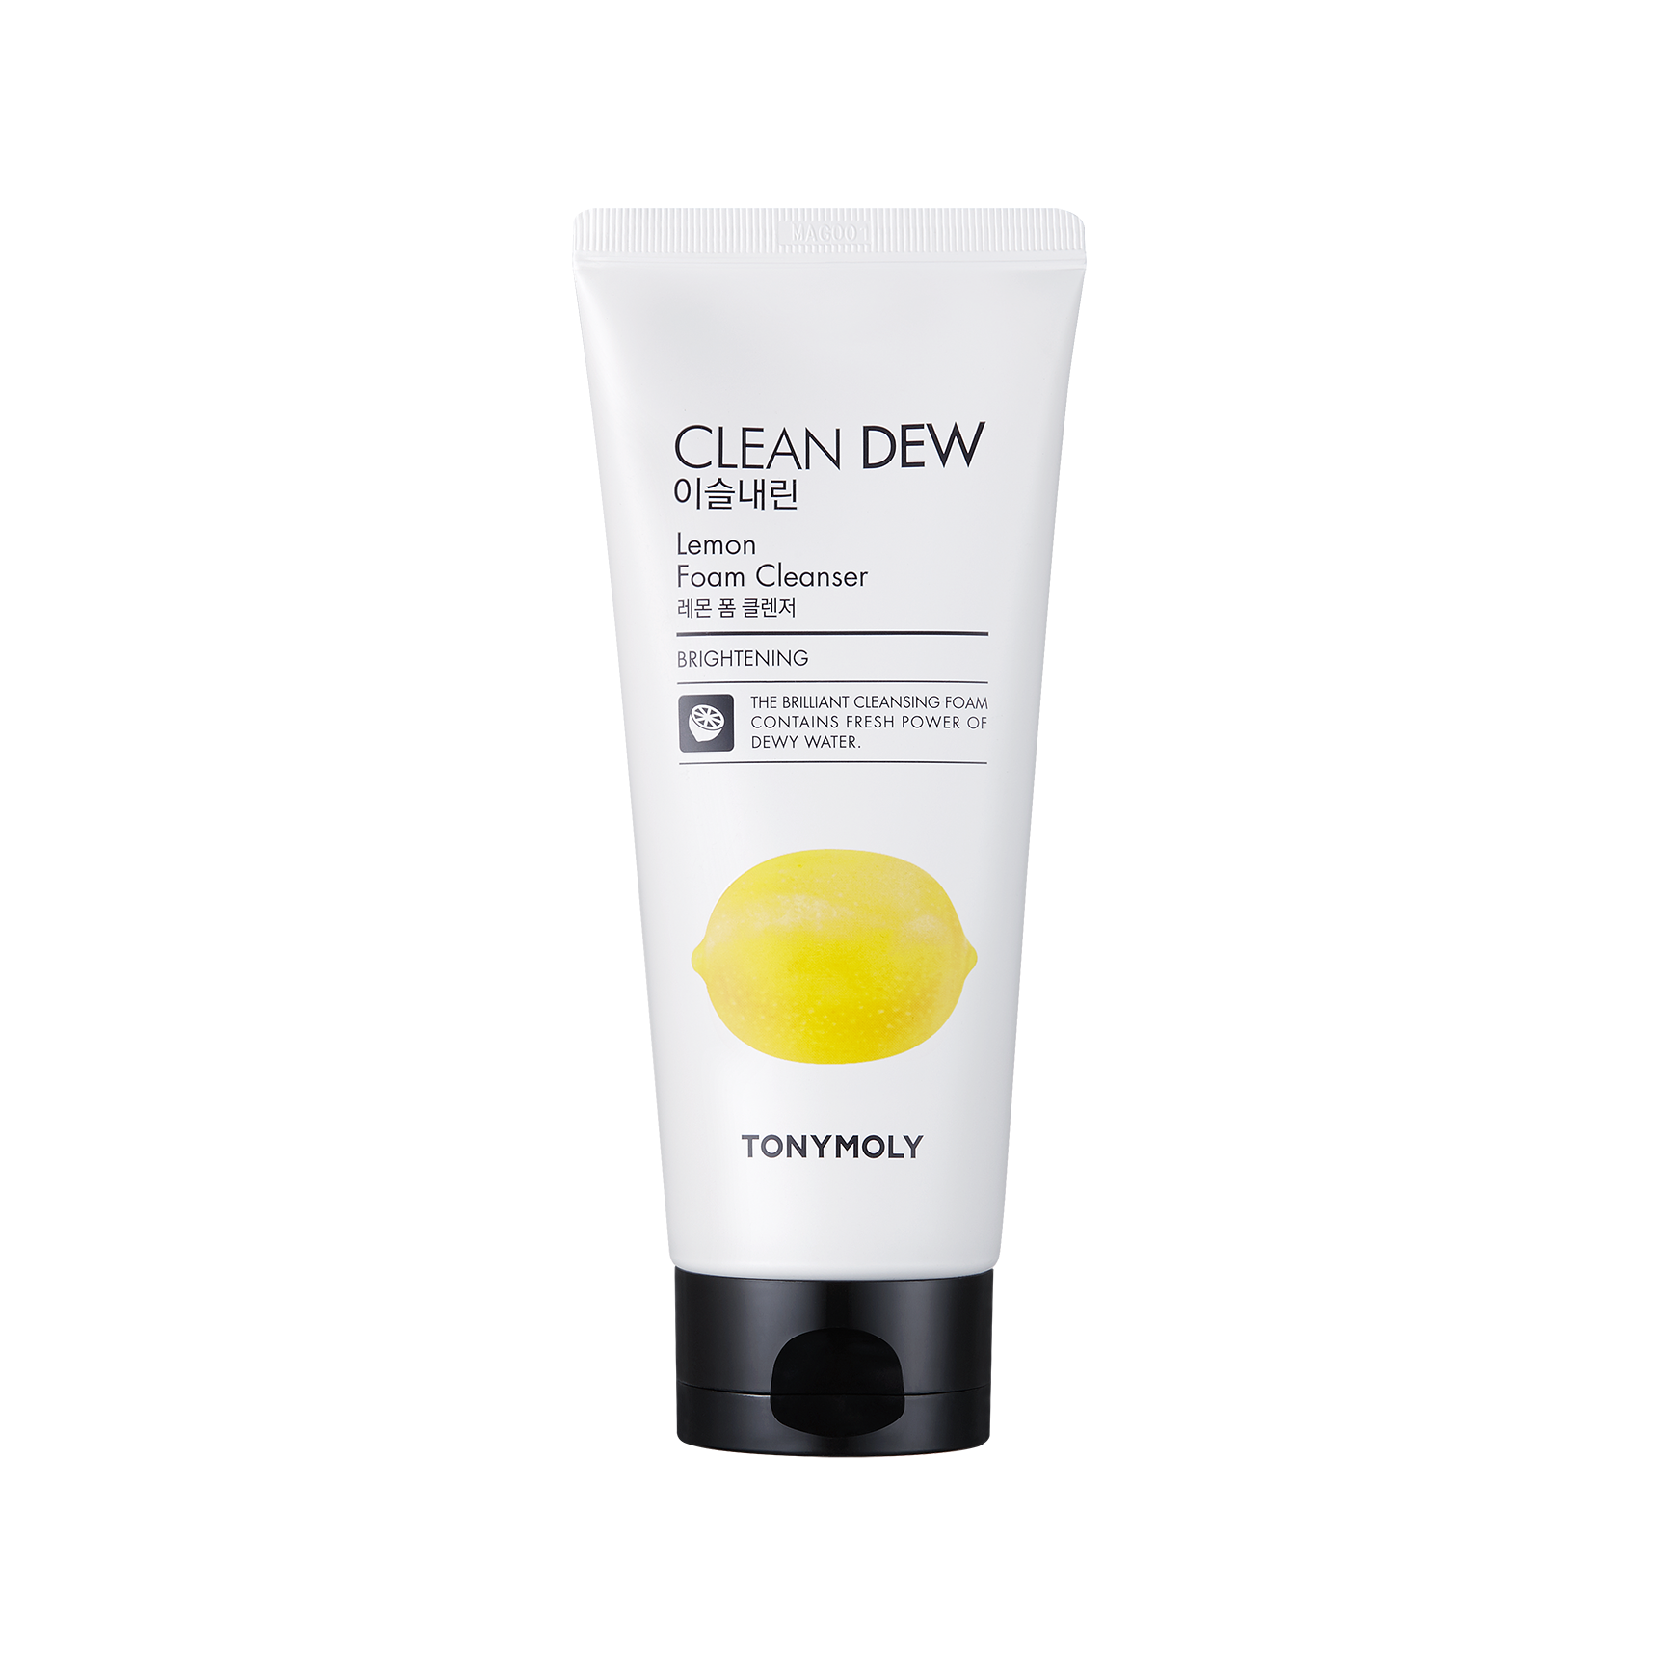 Clean Dew Foam Cleanser - Lemon